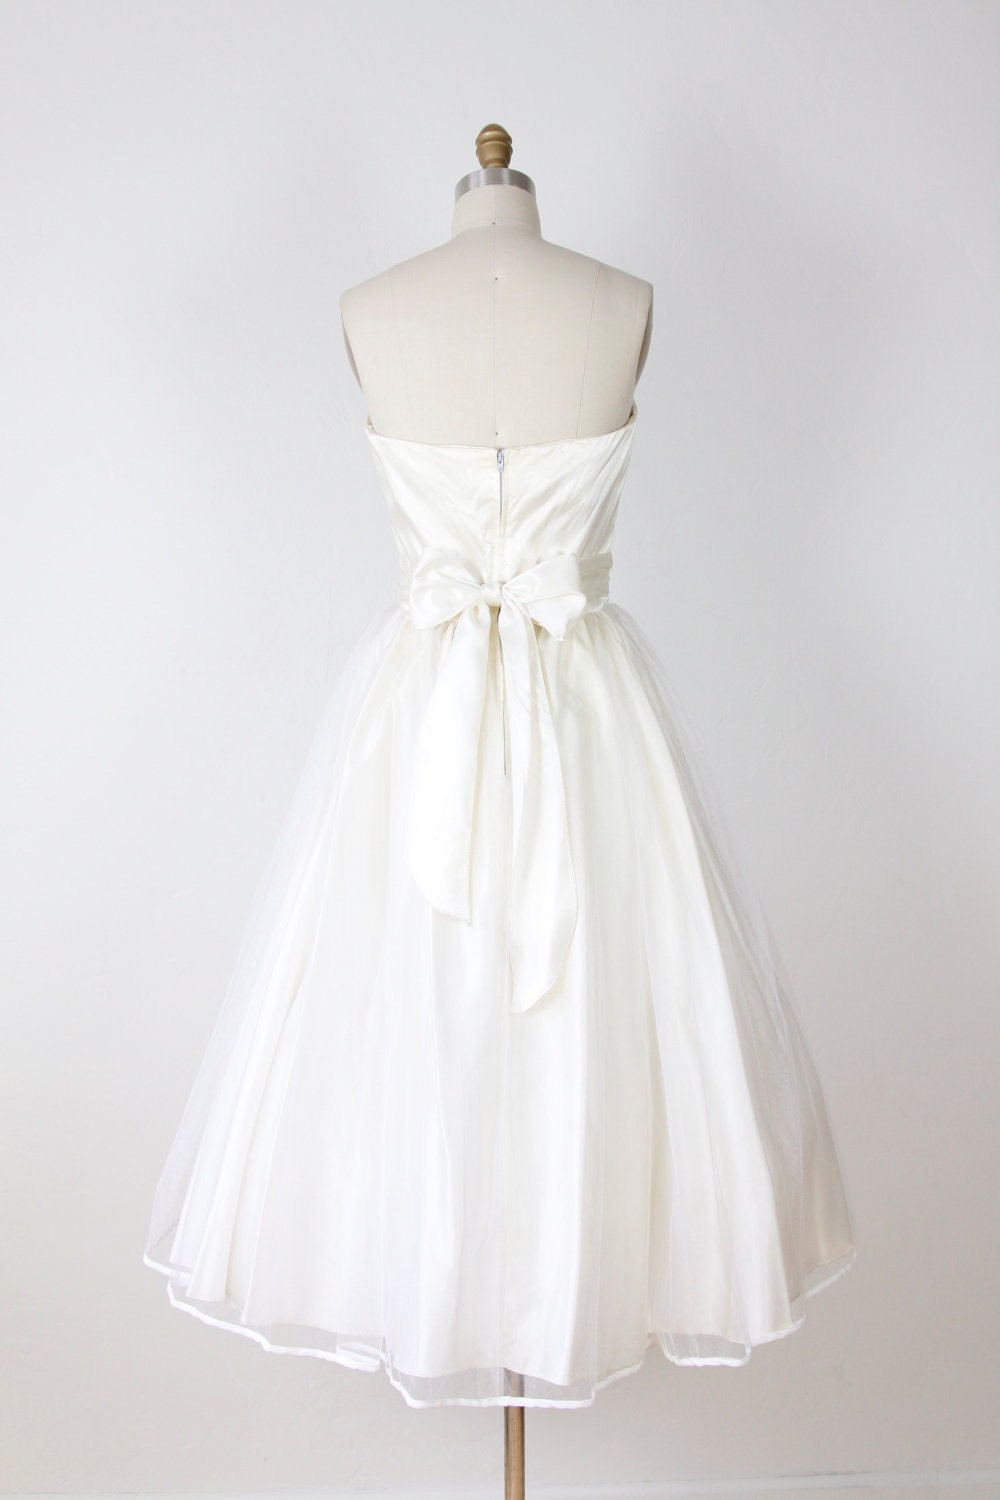 Full Skirt Ivory Wedding Dress Sheer Tulle Vintage